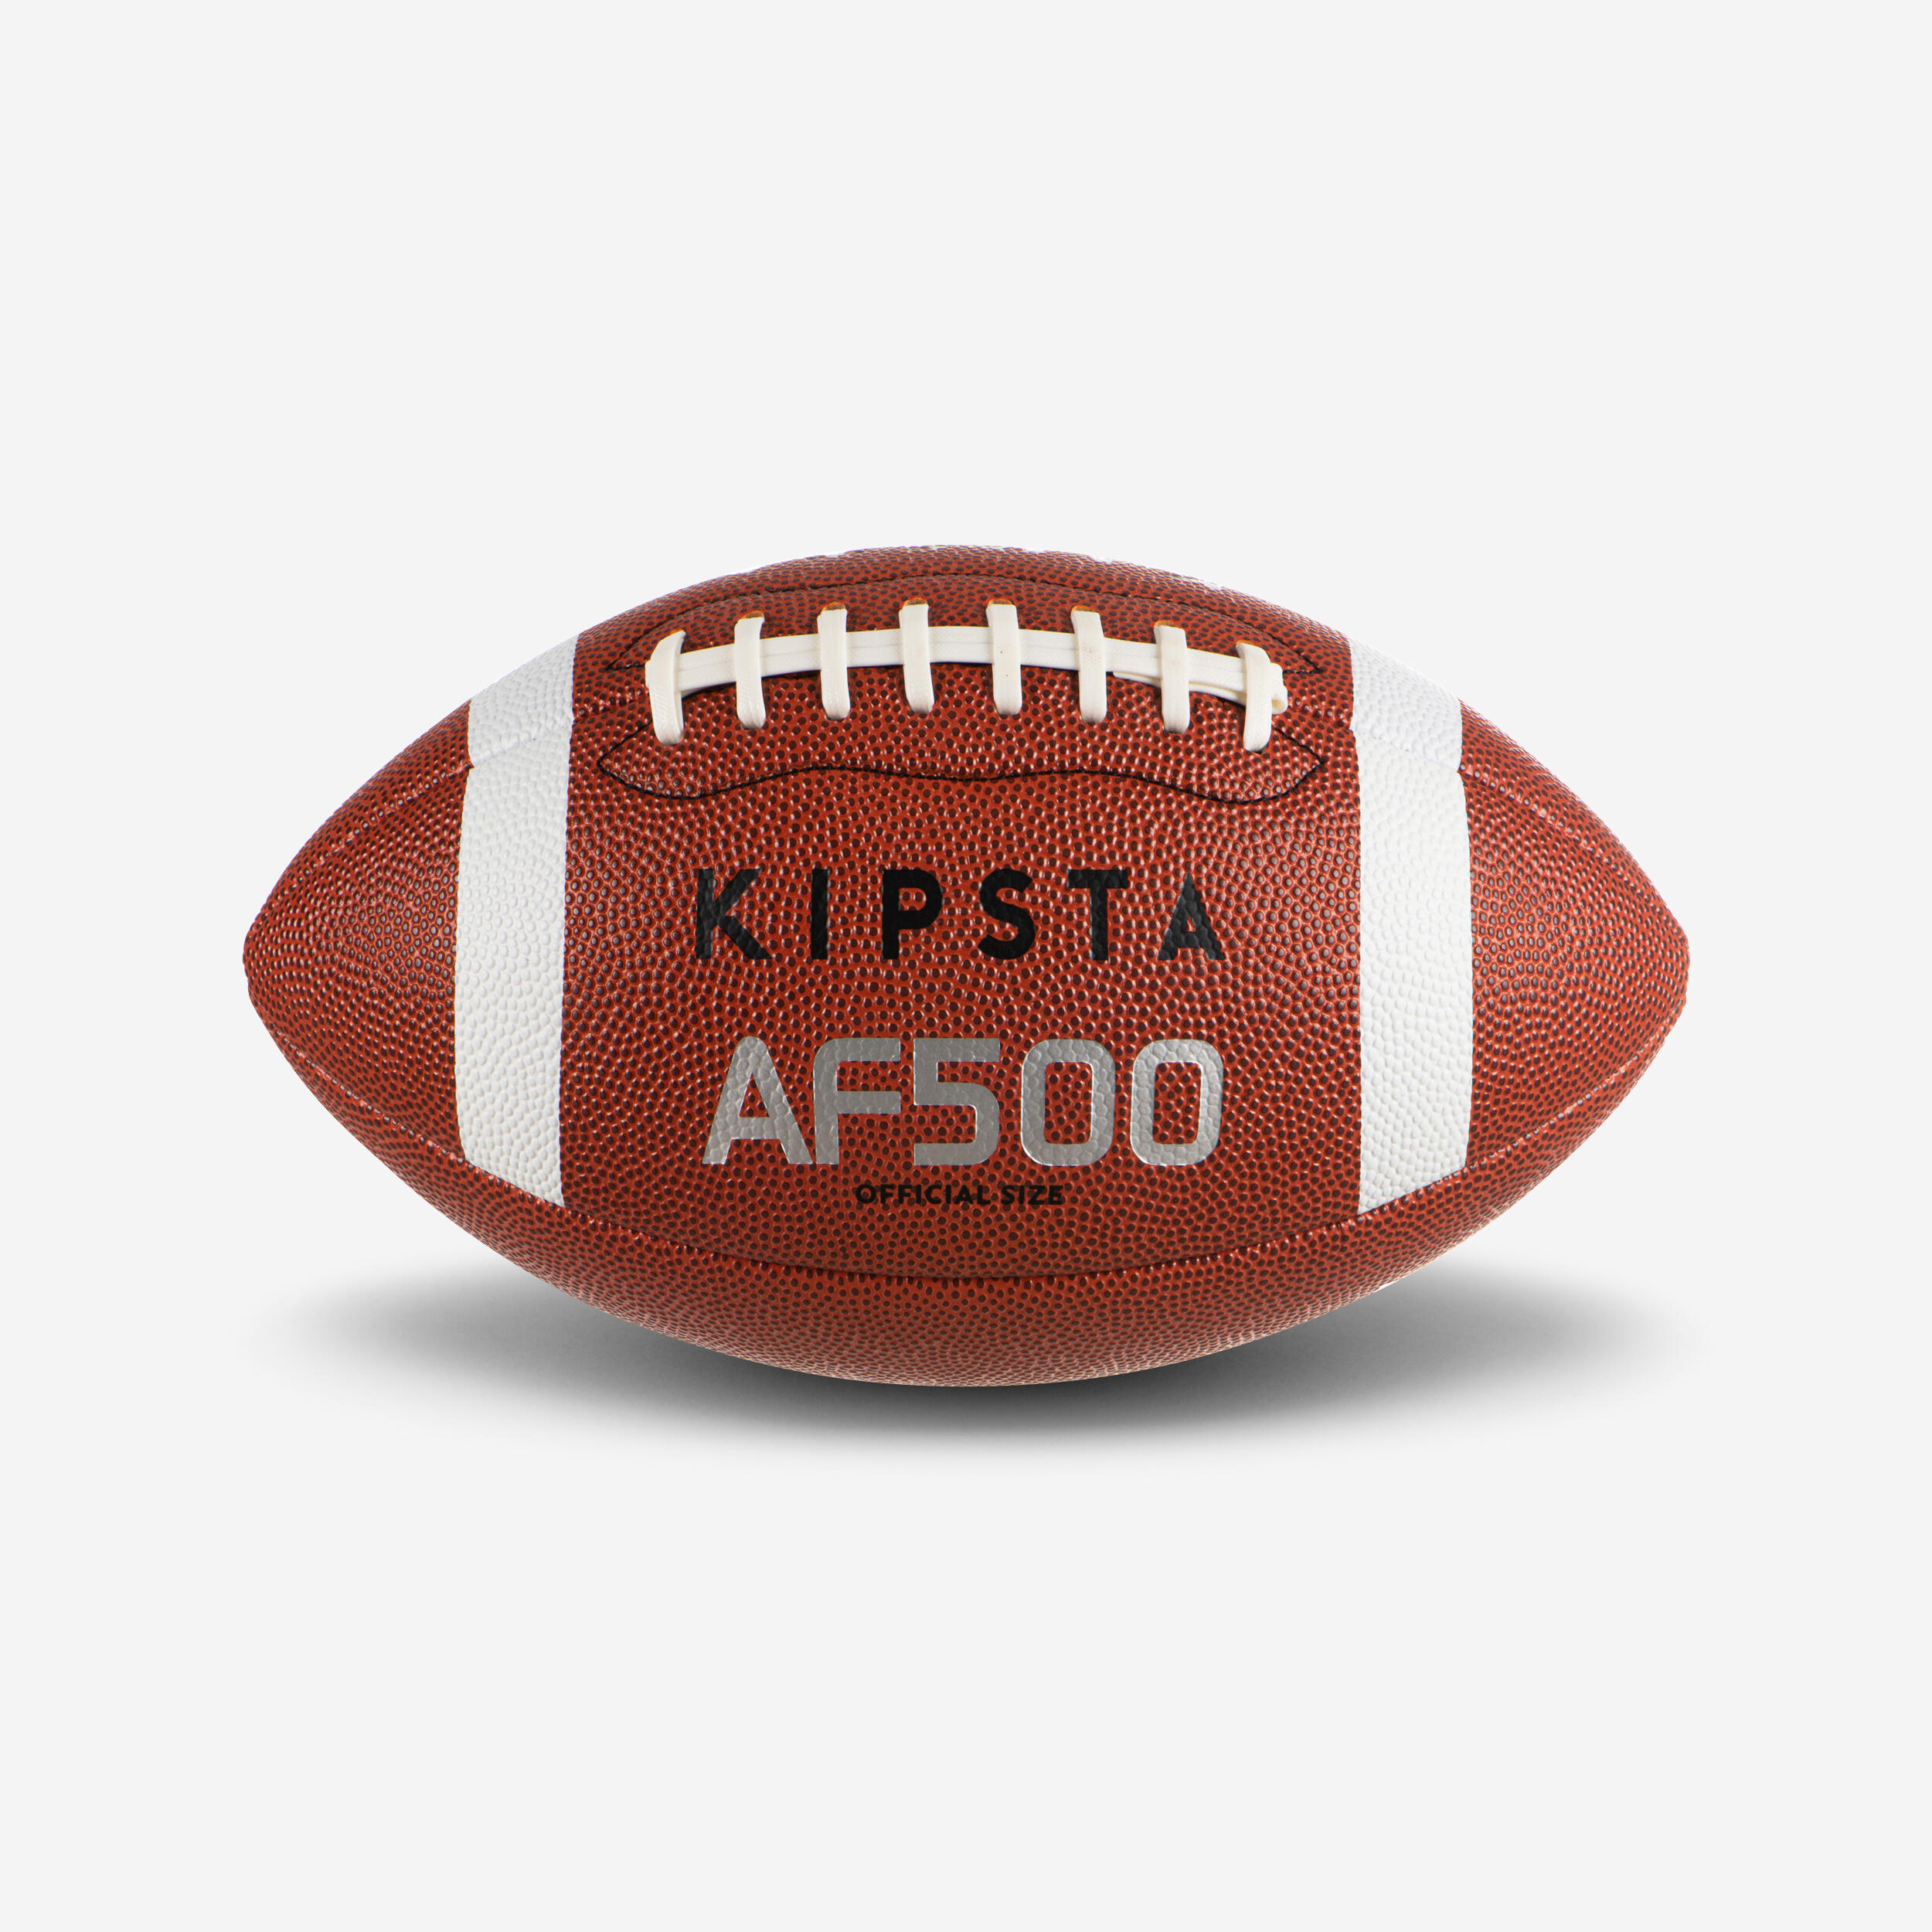 Decathlon | Pallone football americano AF 500 taglia ufficiale marrone |  Kipsta